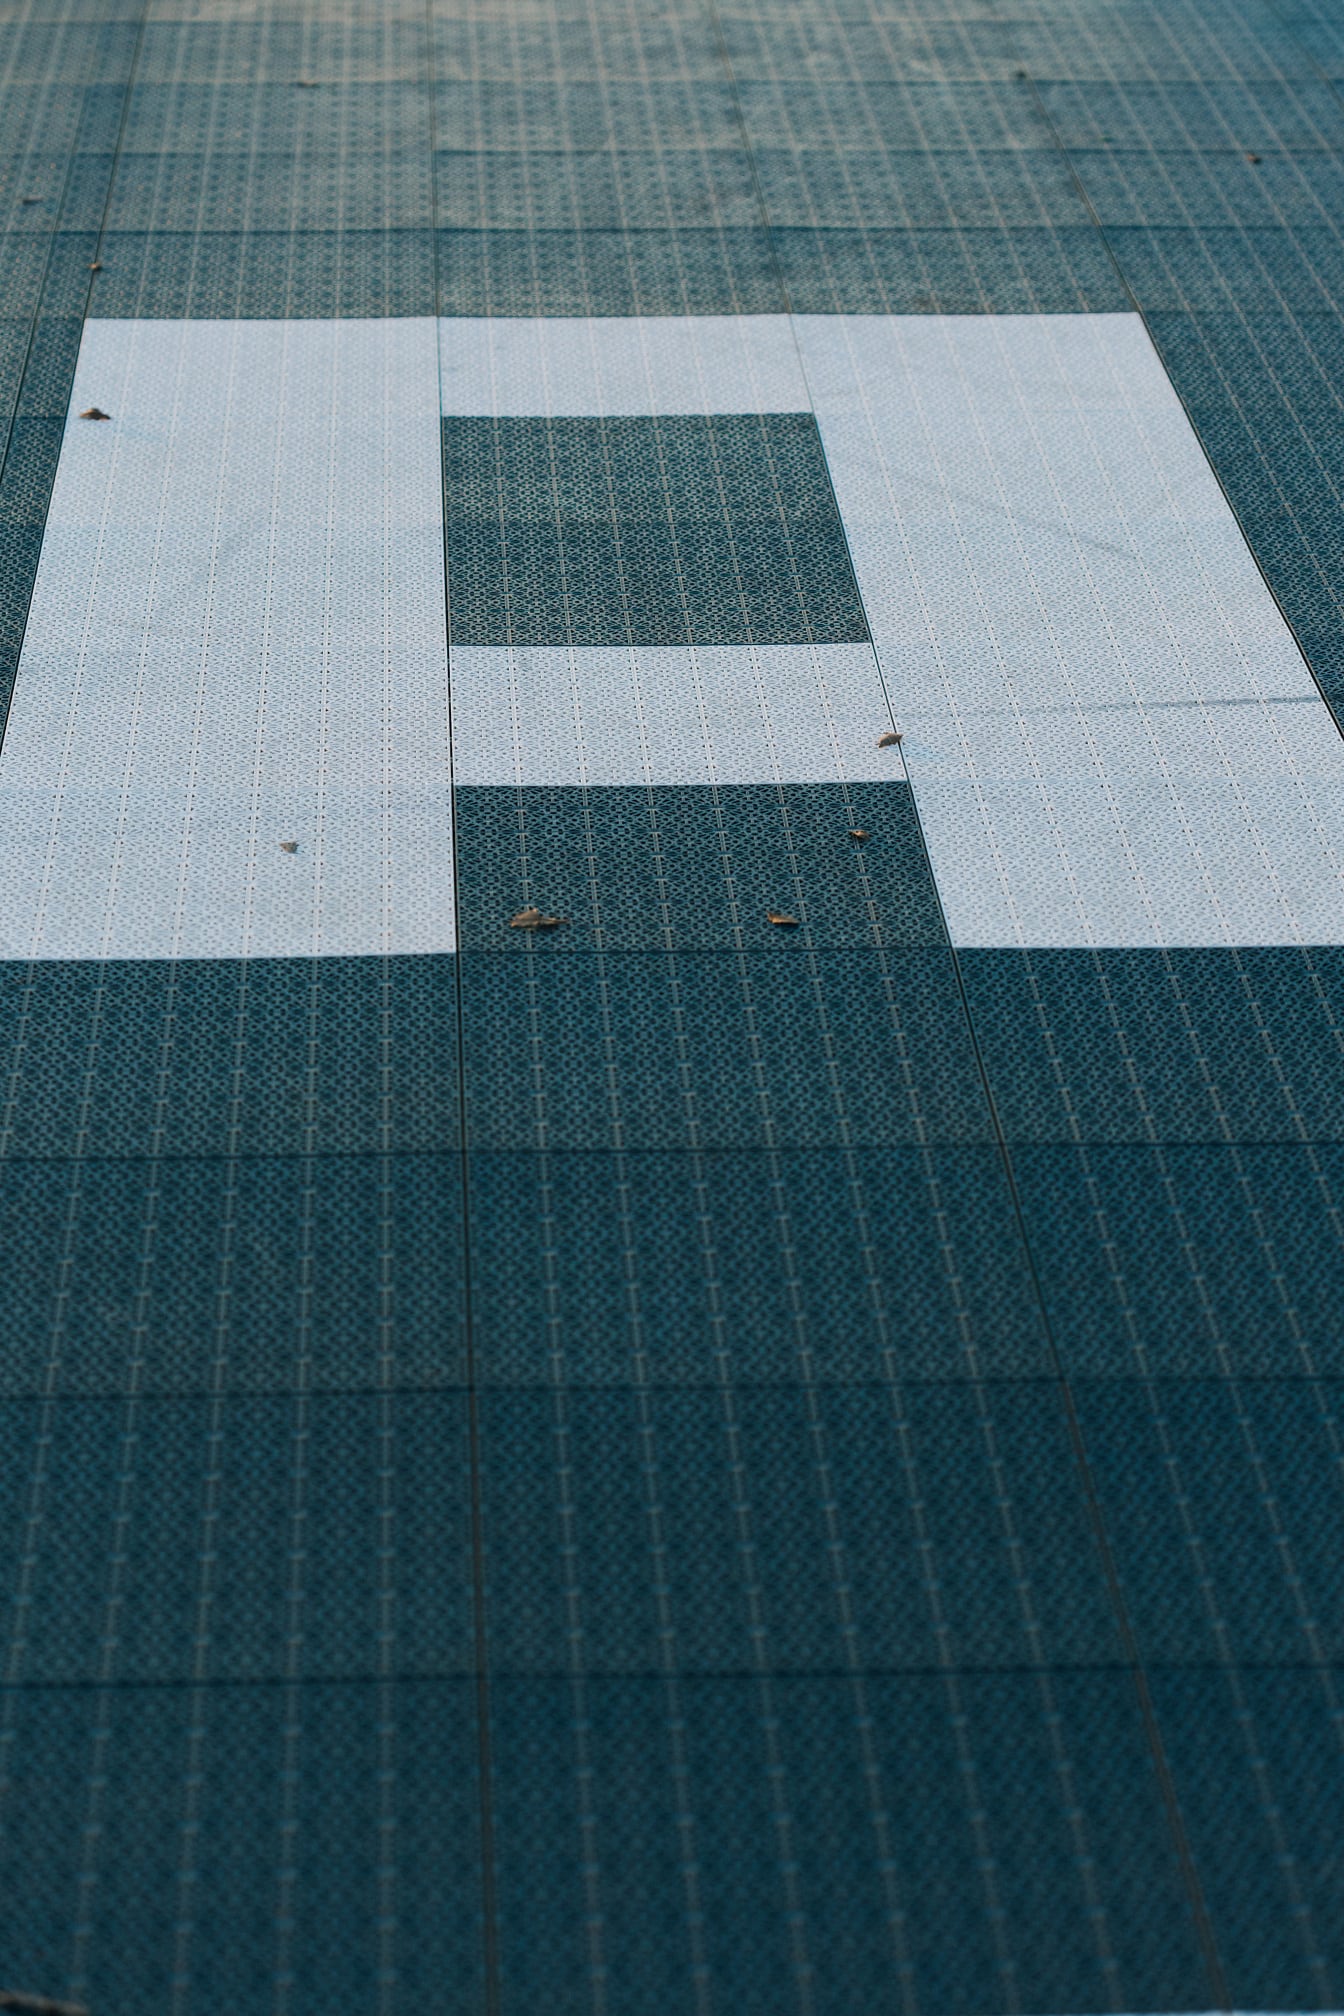 Nahaufnahme eines Buchstabens (A) auf dem Boden mit geometrischem plastischem Muster